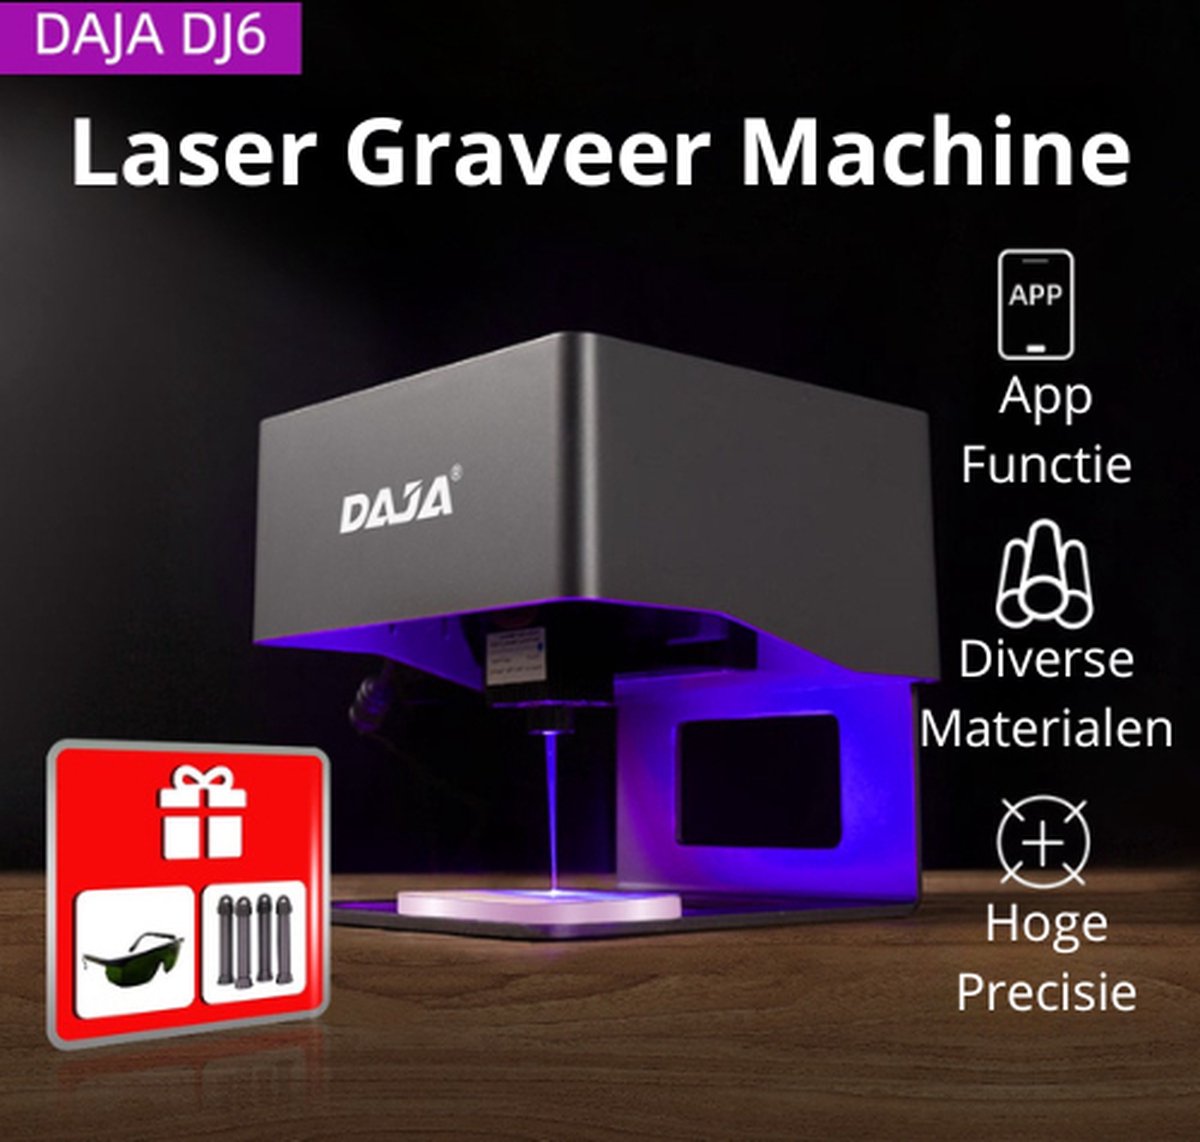 Daja DJ6 - Laser Graveermachine - Laser Cutter - Multifunctioneel - Makkelijk te installeren - DAJA.